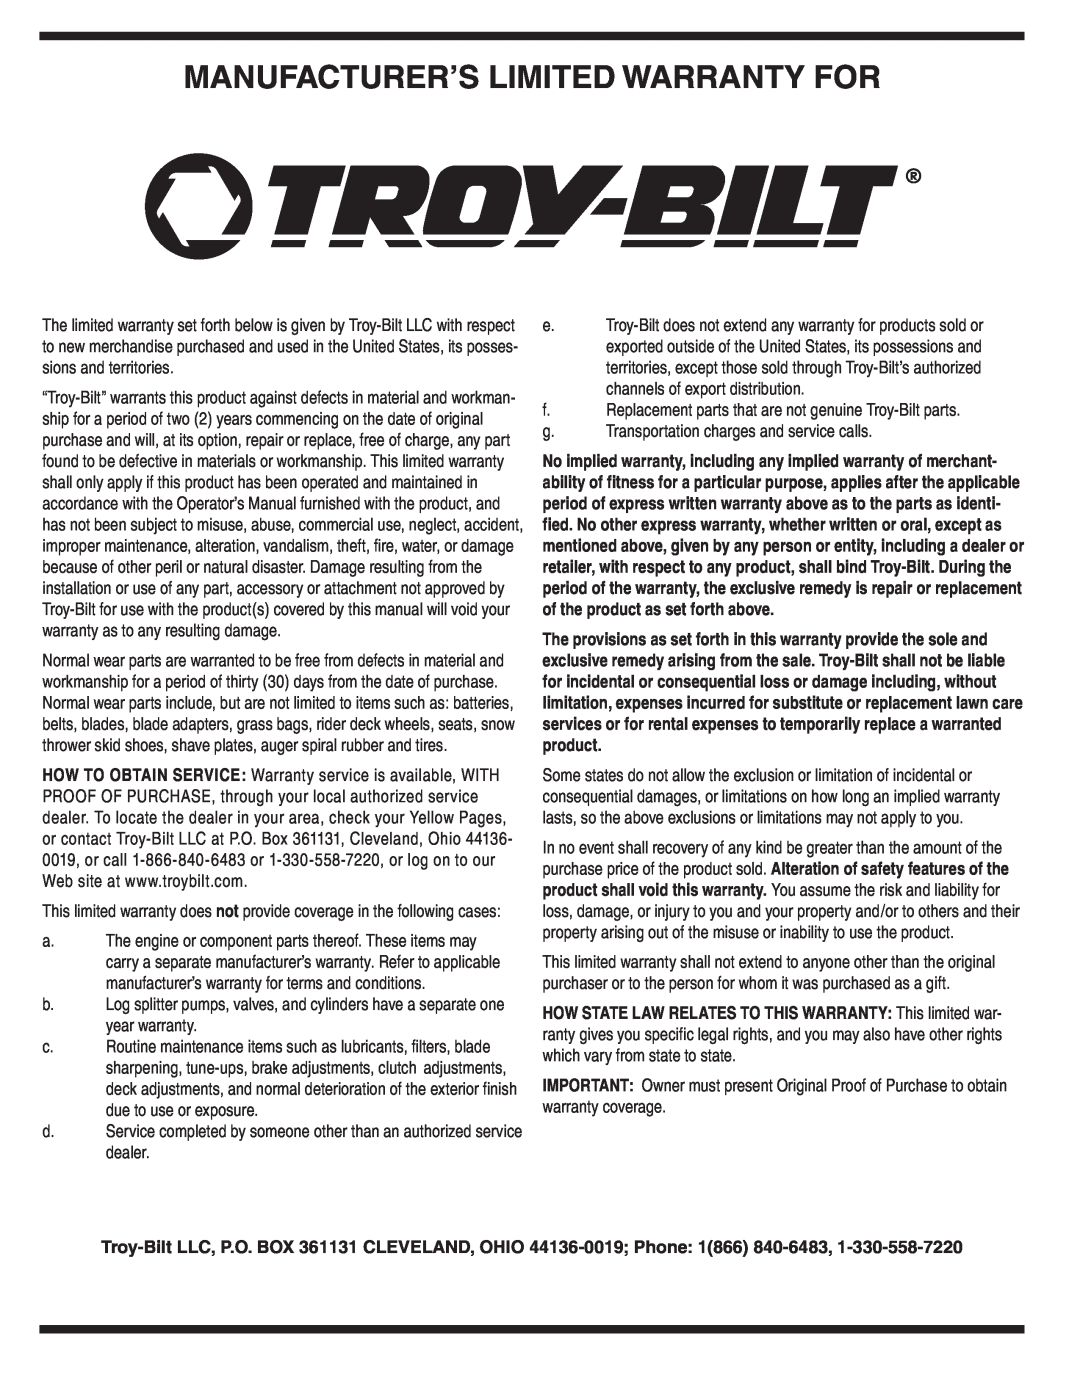 Troy-Bilt 5521 warranty Manufacturer’S Limited Warranty For 